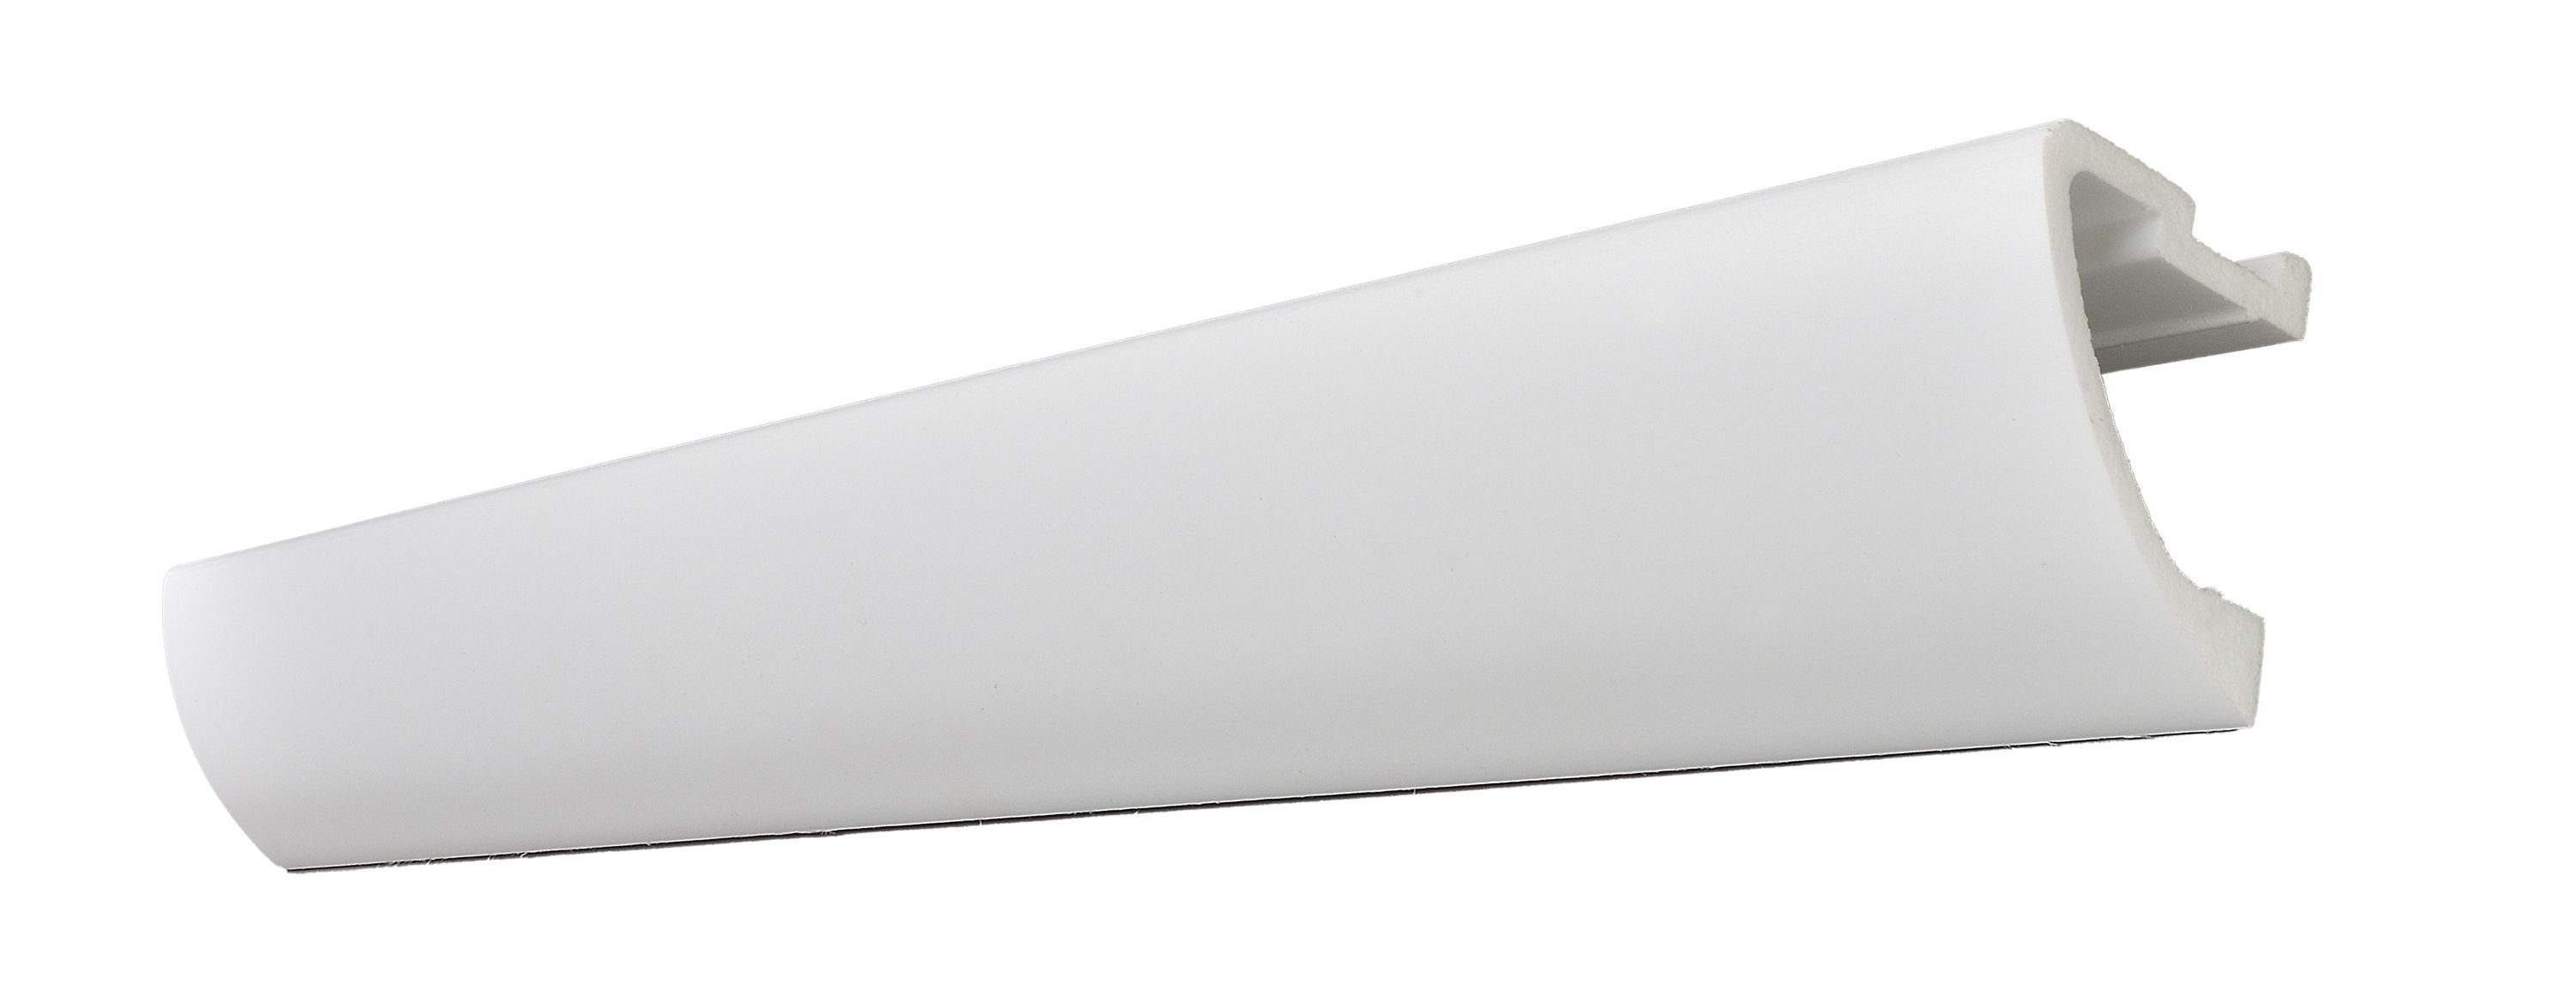 Decosa Deckenleiste Decosa Lichtleiste T50, weiß, 45 x 57 mm, Länge: 2 m, Kleben, Polystyrol (Styropor), 1-St., Stoß- und schlagfest, Zur indirekten Beleuchtung